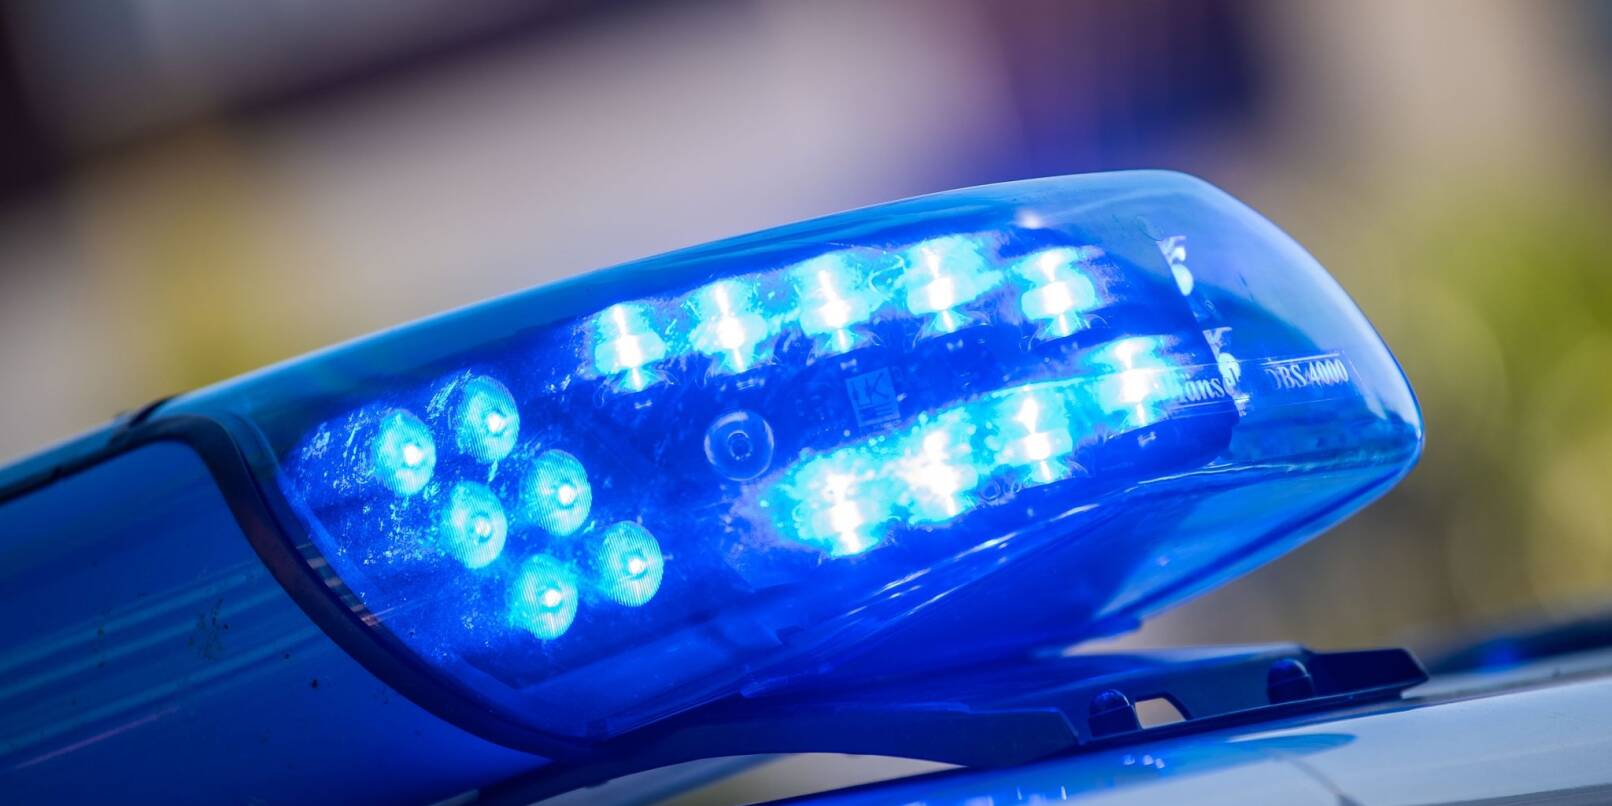 Ein Blaulicht auf dem Dach eines Polizeifahrzeugs. Eine Vermisste wurde tot aufgefunden, ein mutmaßlicher Täter festgenommen.